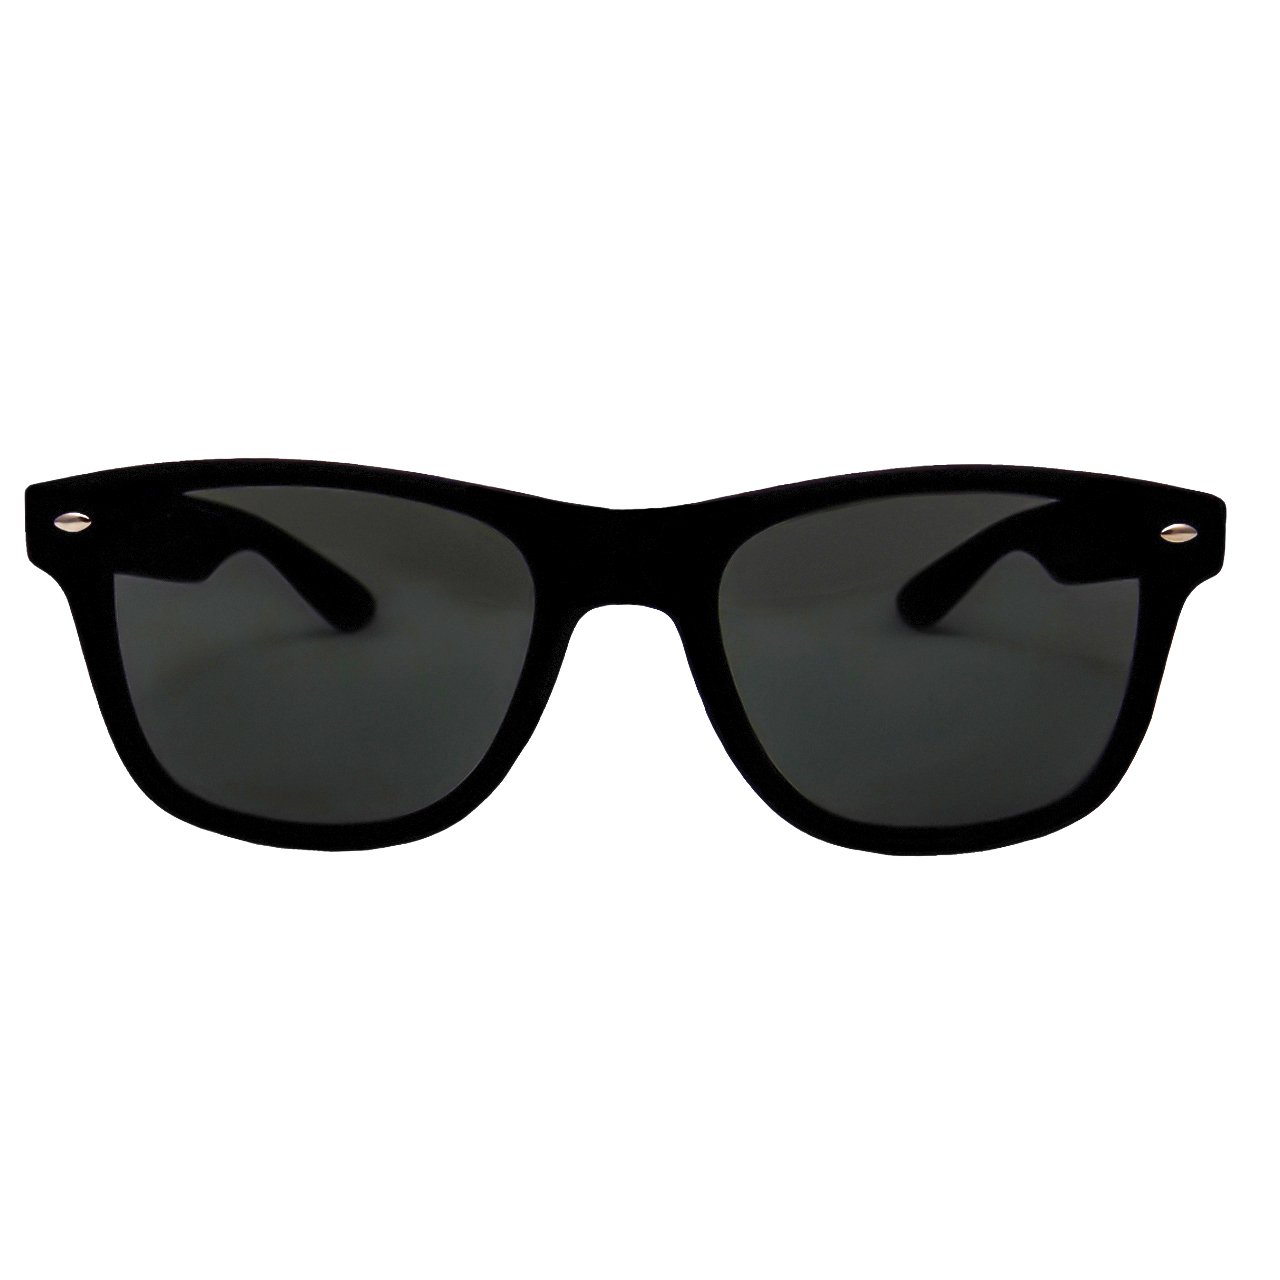 نکته خرید - قیمت روز عینک آفتابی مدل روبو M300 خرید